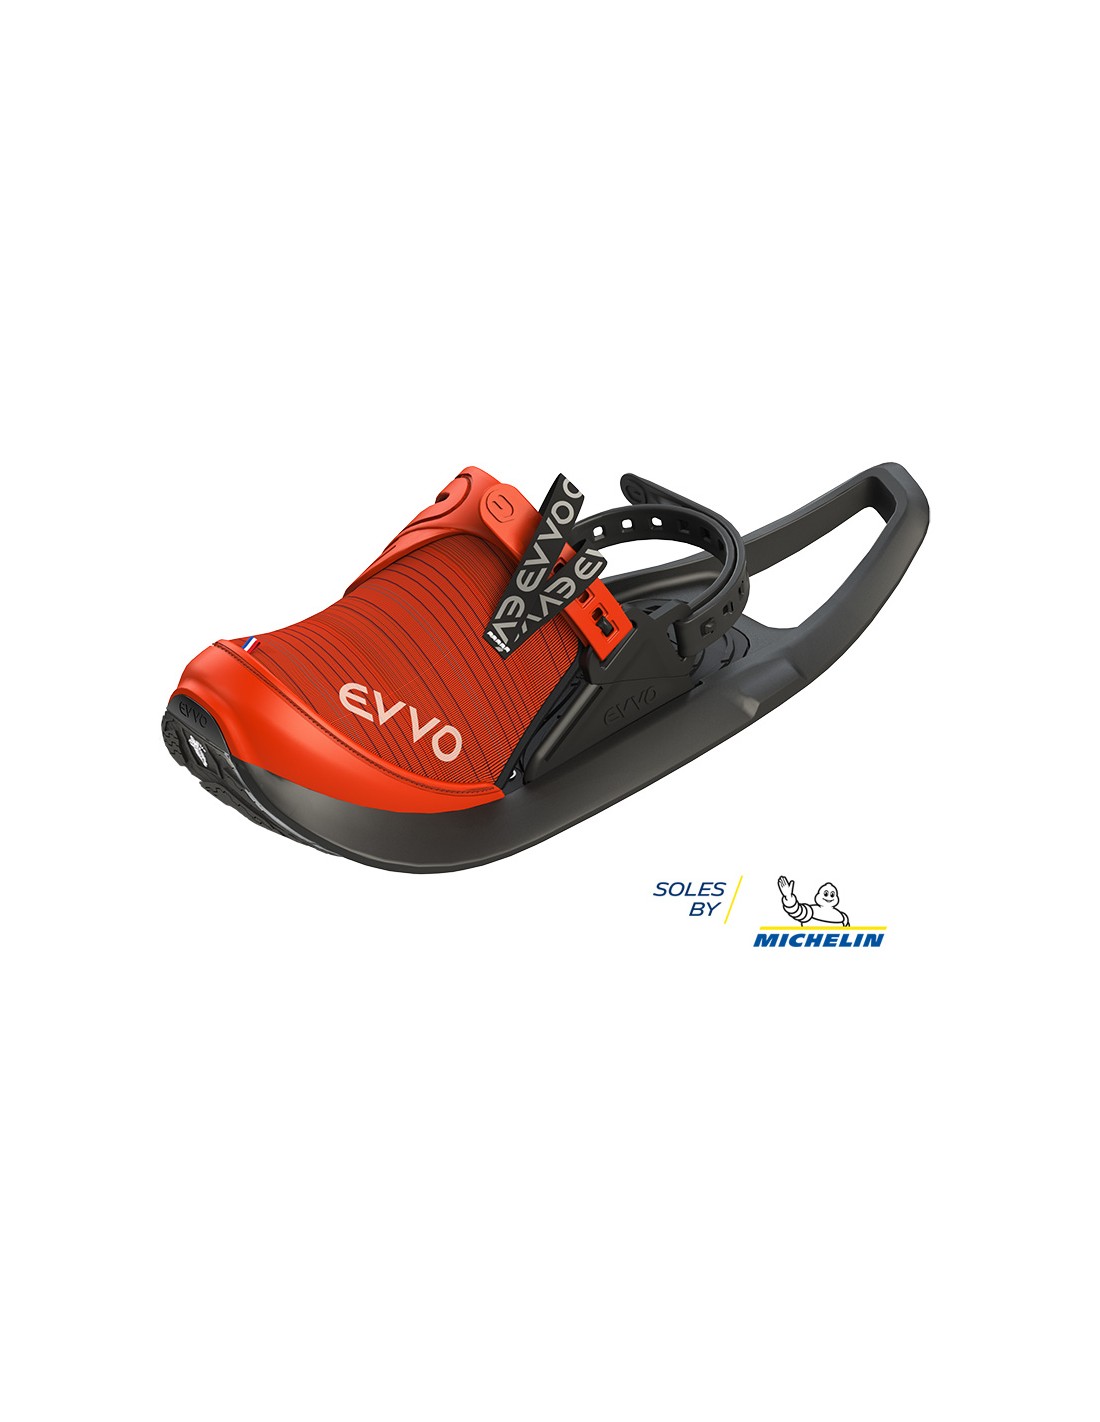 Evvo Snowshoes Pro Cloutées Rouge Raquettes à neige : Snowleader